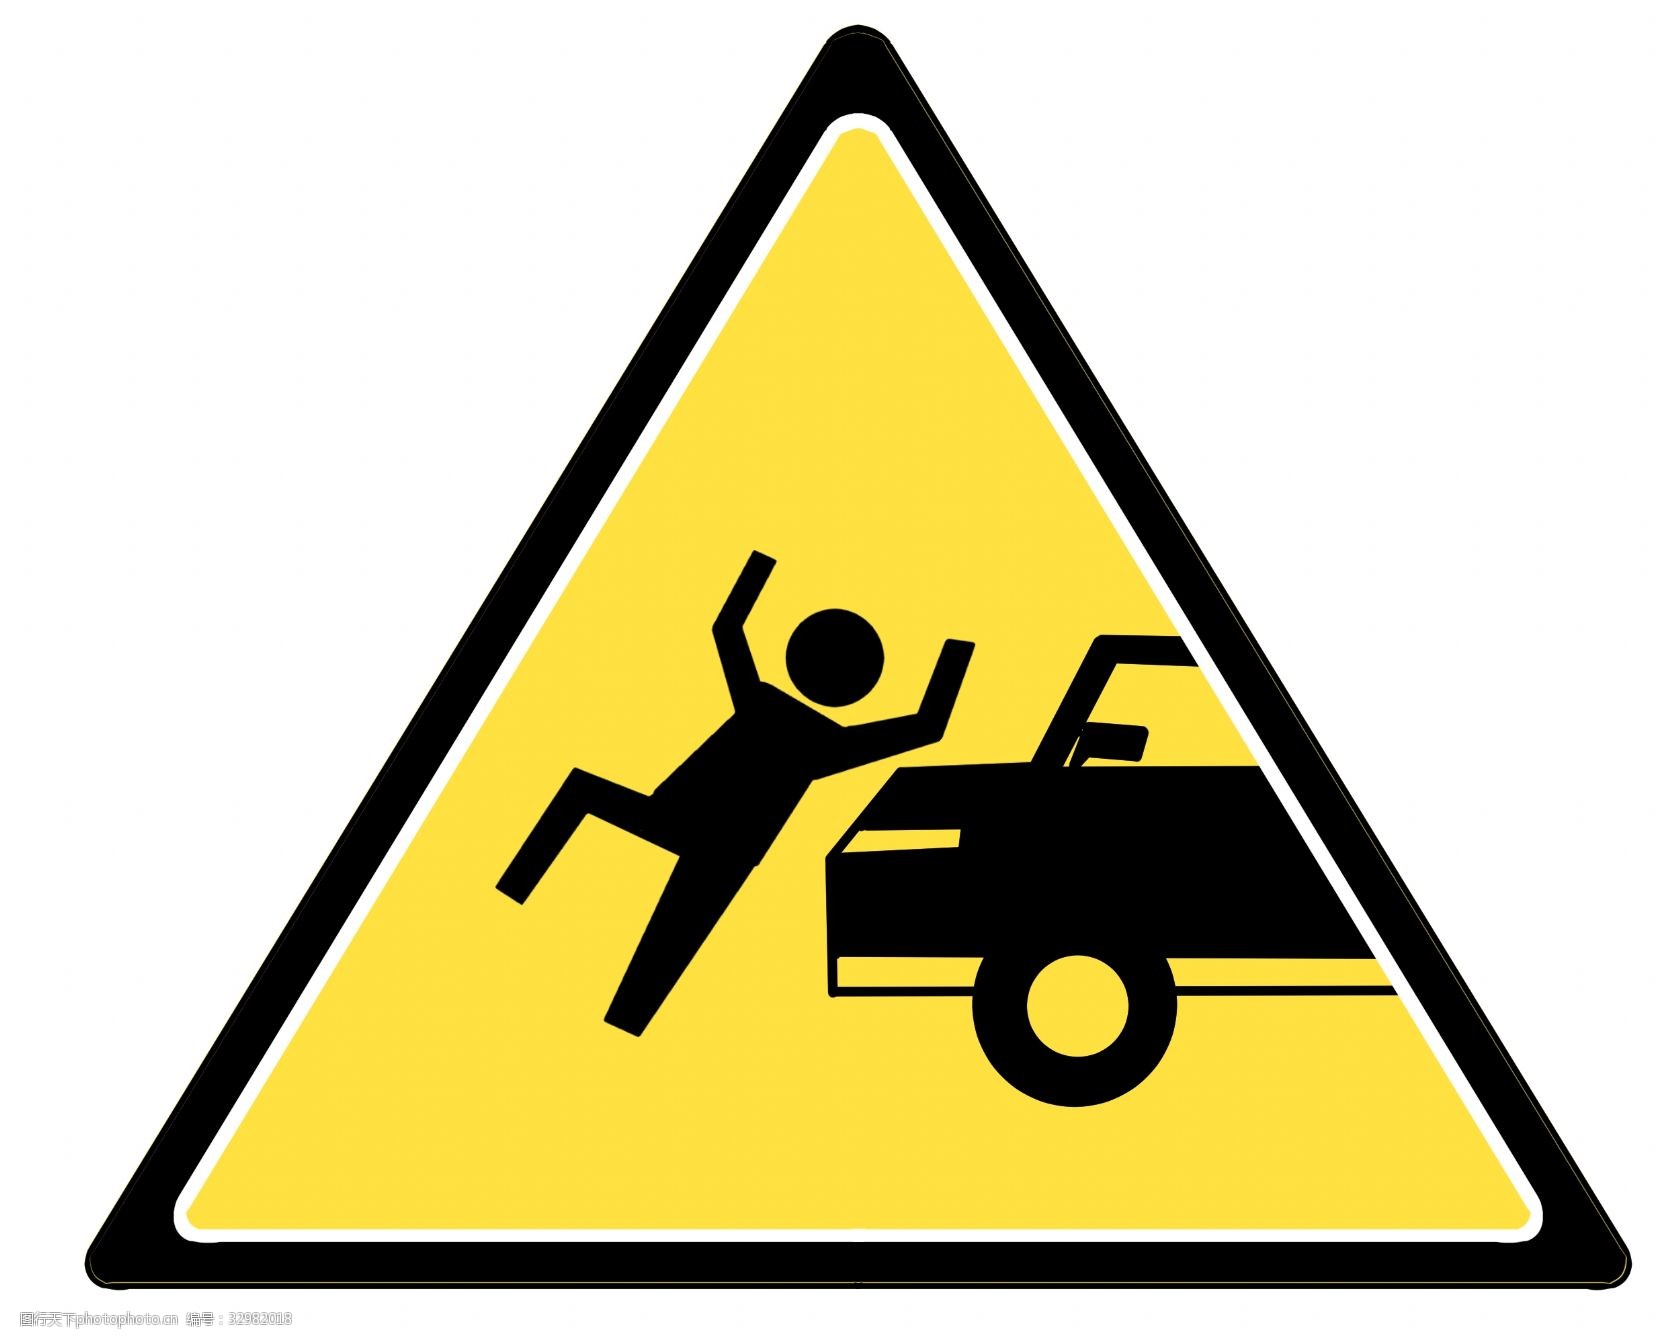 关键词:当心车辆安全标示 当心车辆 安全标示 交通标志 机动车 提示